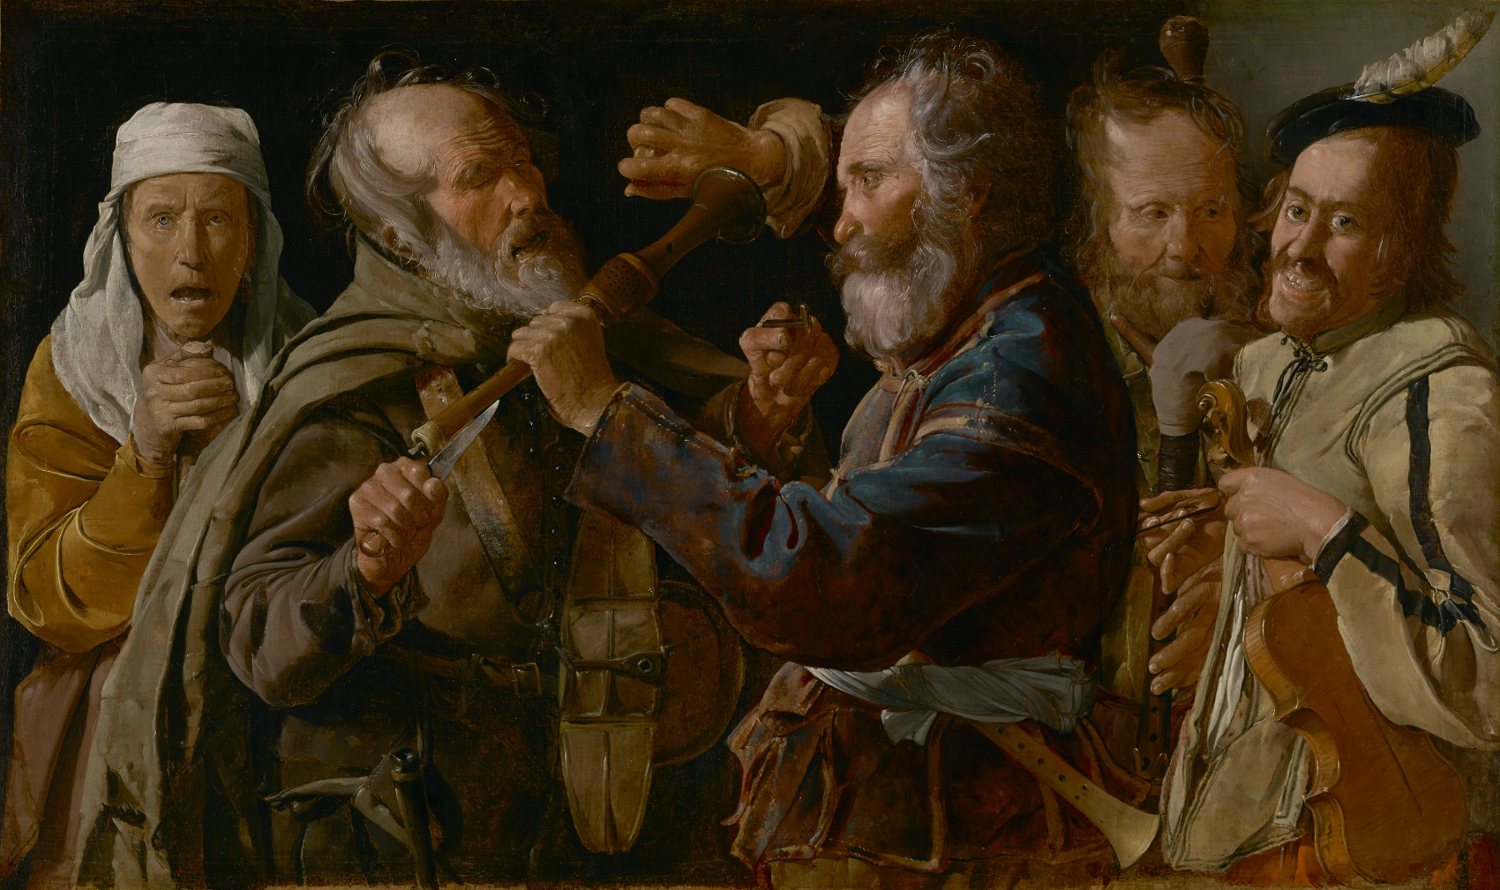 Georges de La Tour, La rissa tra musici mendicanti (The Musicians' Brawl), 1625-1630, olio su tela, 85,7x141 cm, The J. Paul Getty Museum, Los Angeles